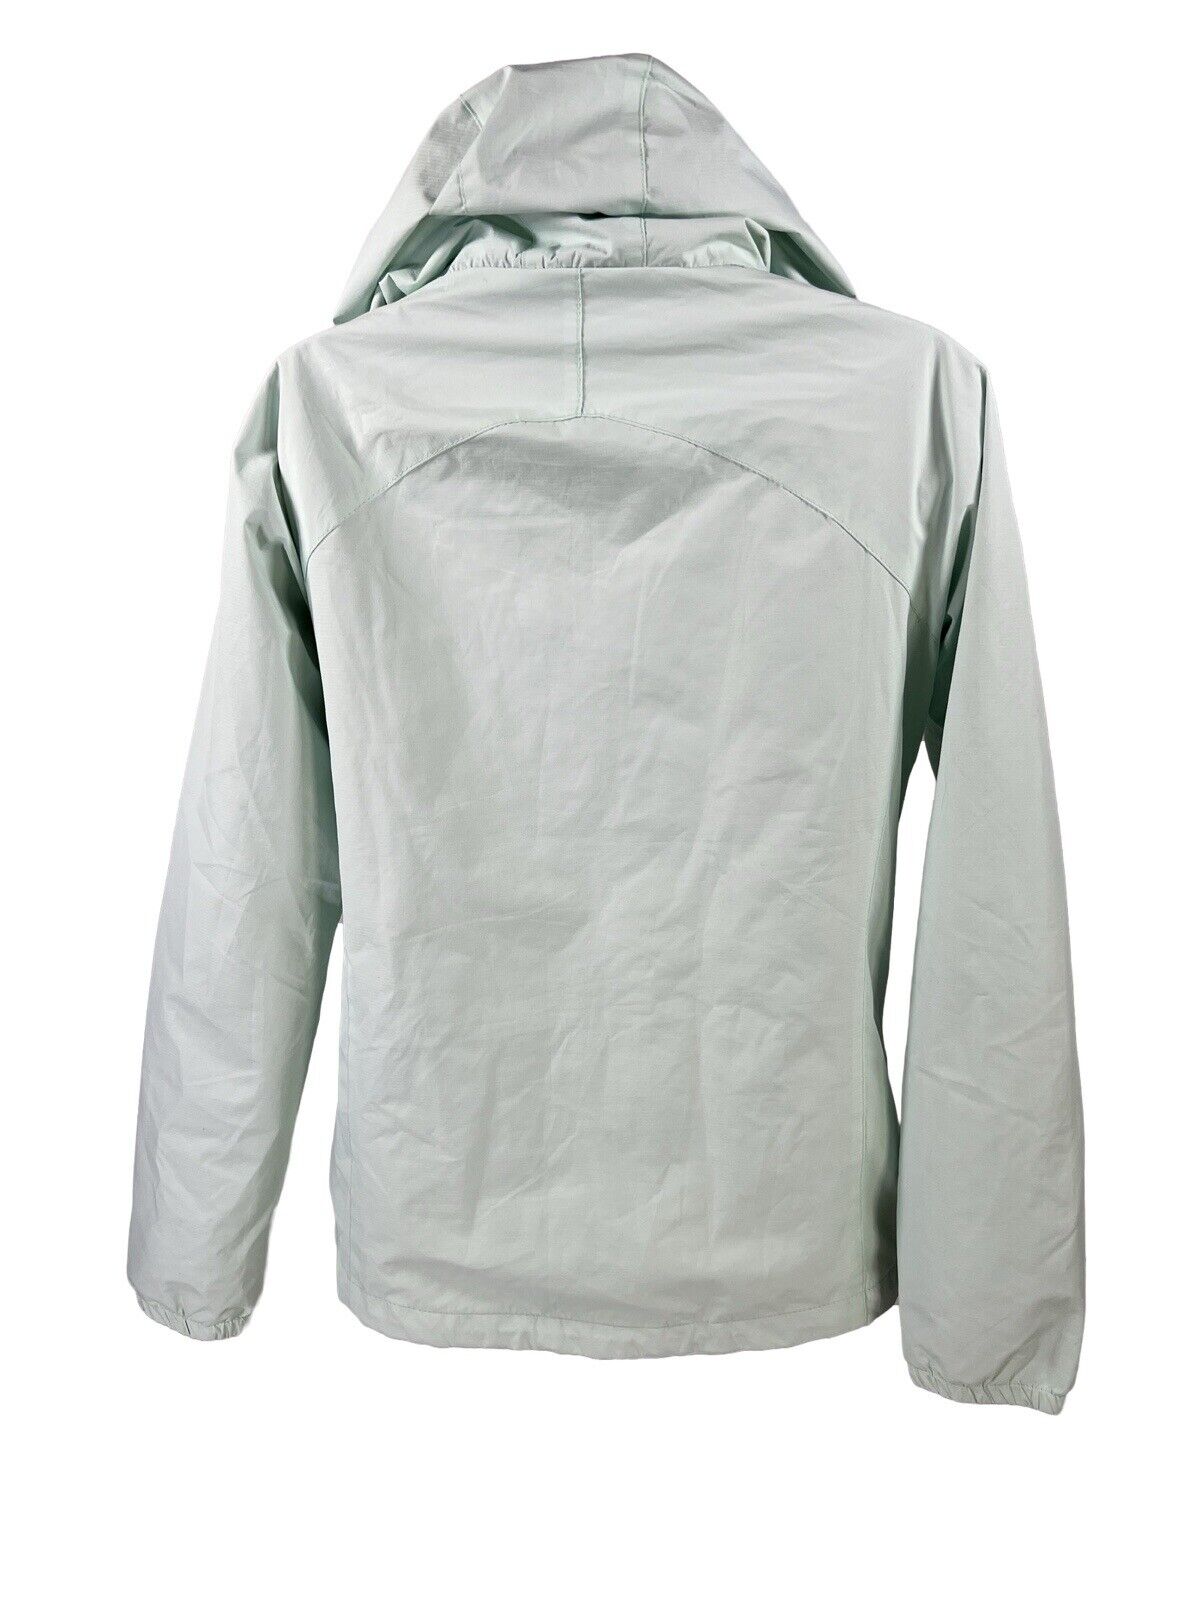 New Balance Women's Mint Green Full Zip Hooded Windbreaker Jacket - S